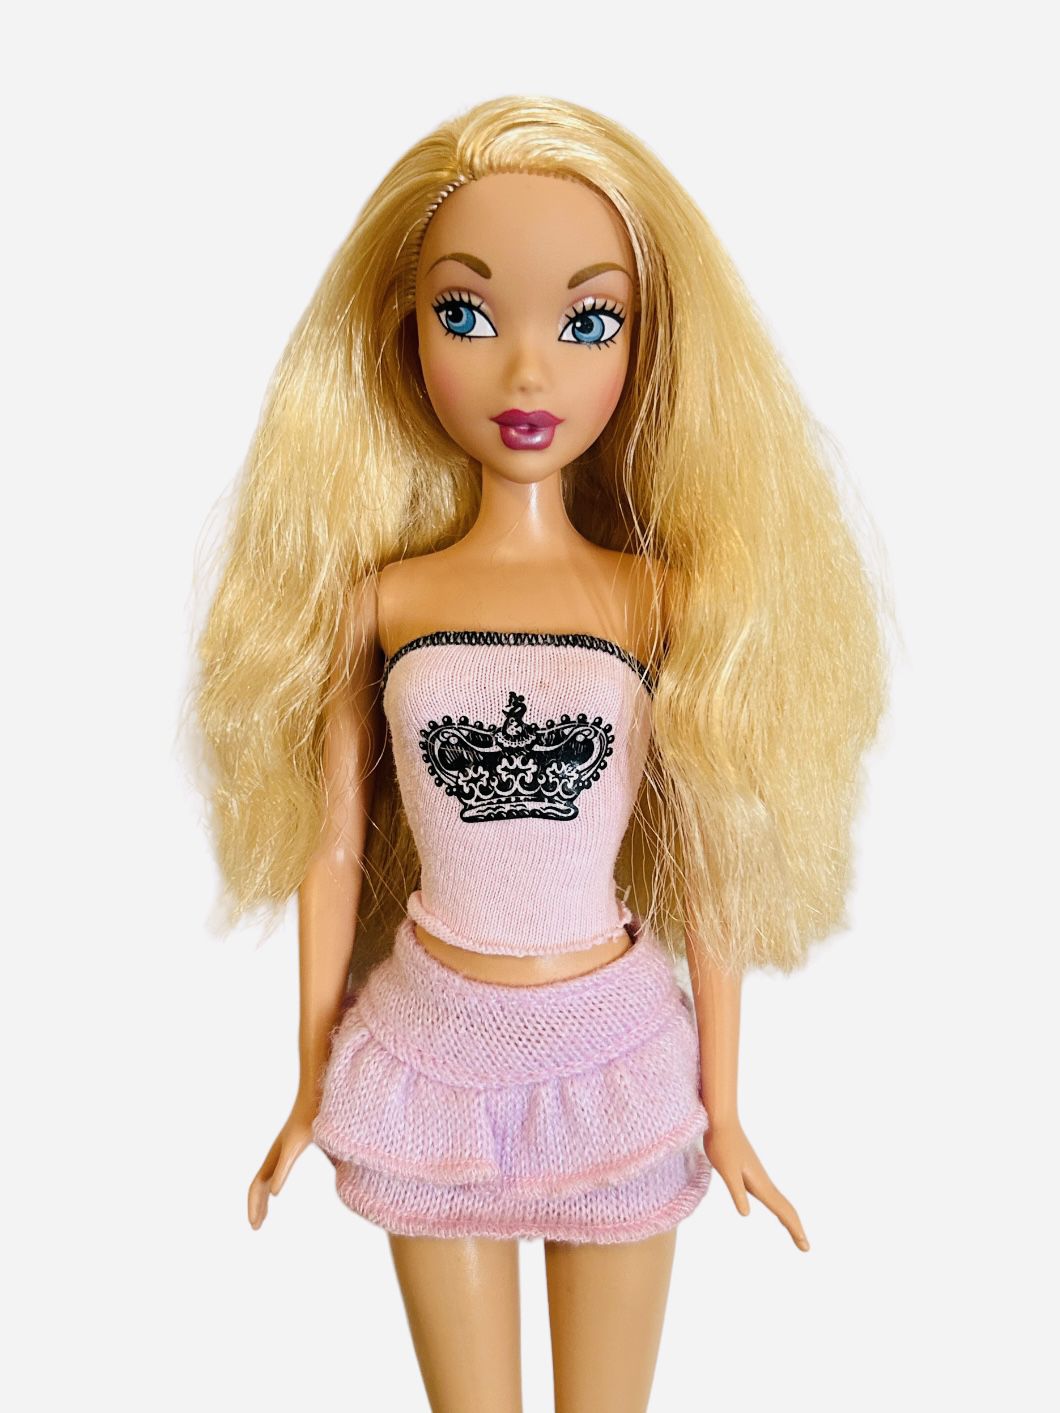 Barbie My Scene Kennedy Doll 1999 Mattel